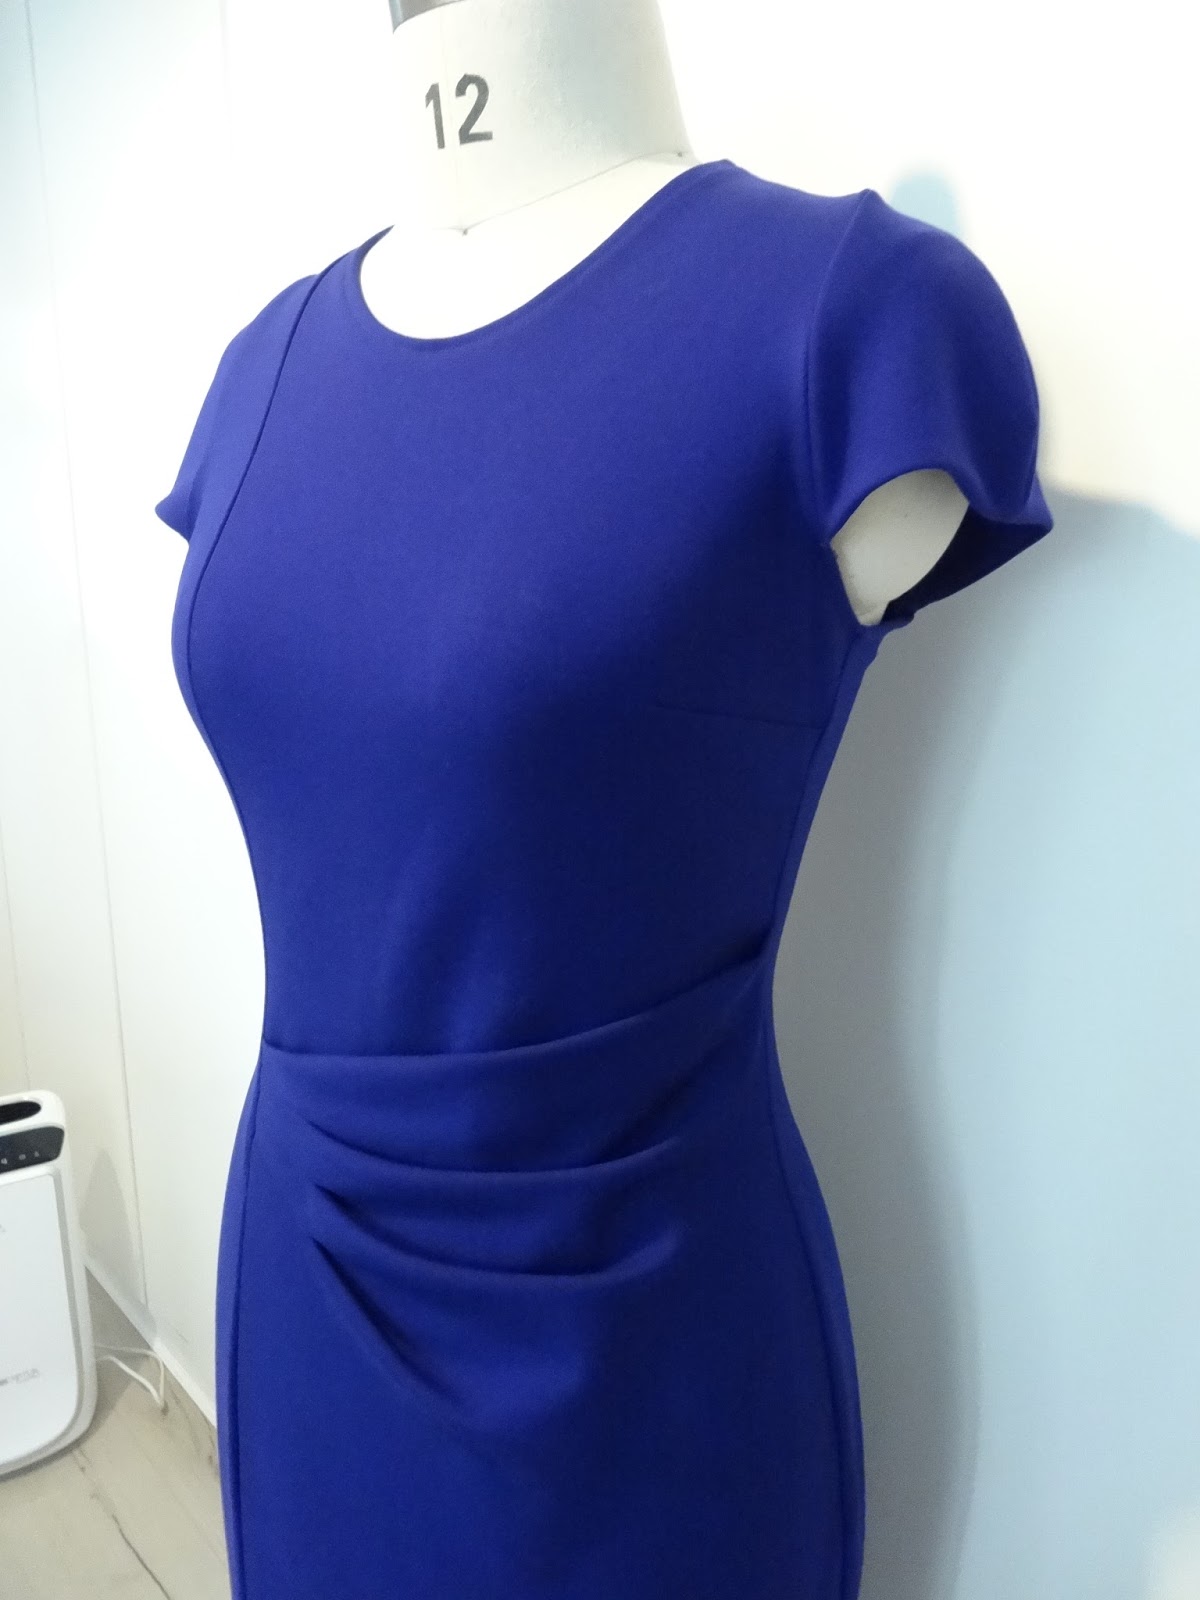 BurdaStyle 3/2016 - 121 Dress | Allison.C Sewing Gallery | Bloglovin’